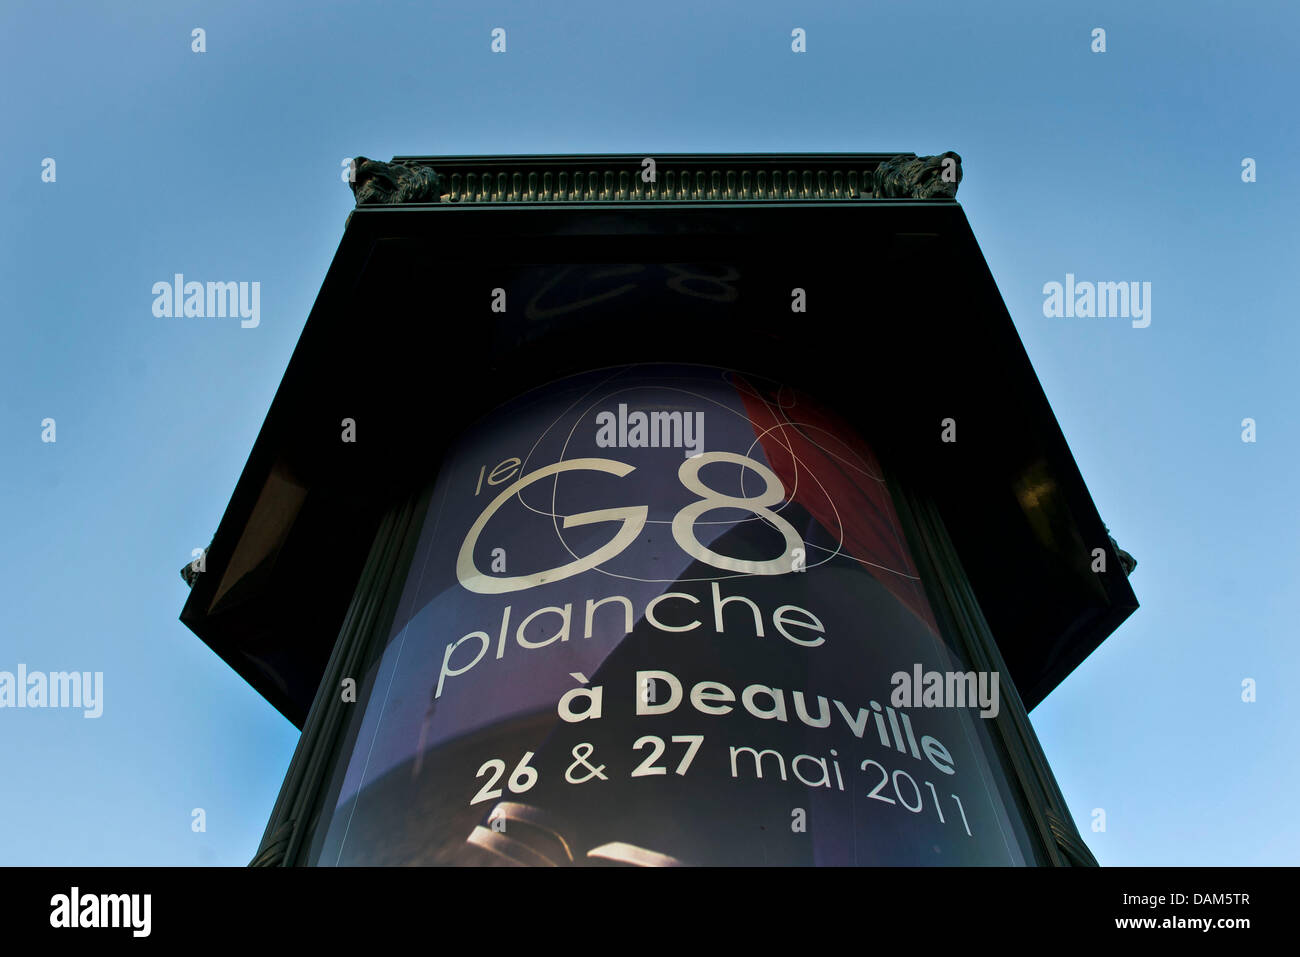 Ein Plakat weist am Dienstagabend (24.05.2011) à Deauville, Frankreich, auf den G8-Gipfel hin. En dem französischen Ort am Ärmelkanal findet am 26. und 27. Mai 2011 der diesjährige G8-Gipfel statt. Foto : dpa Grimm par les pairs Banque D'Images